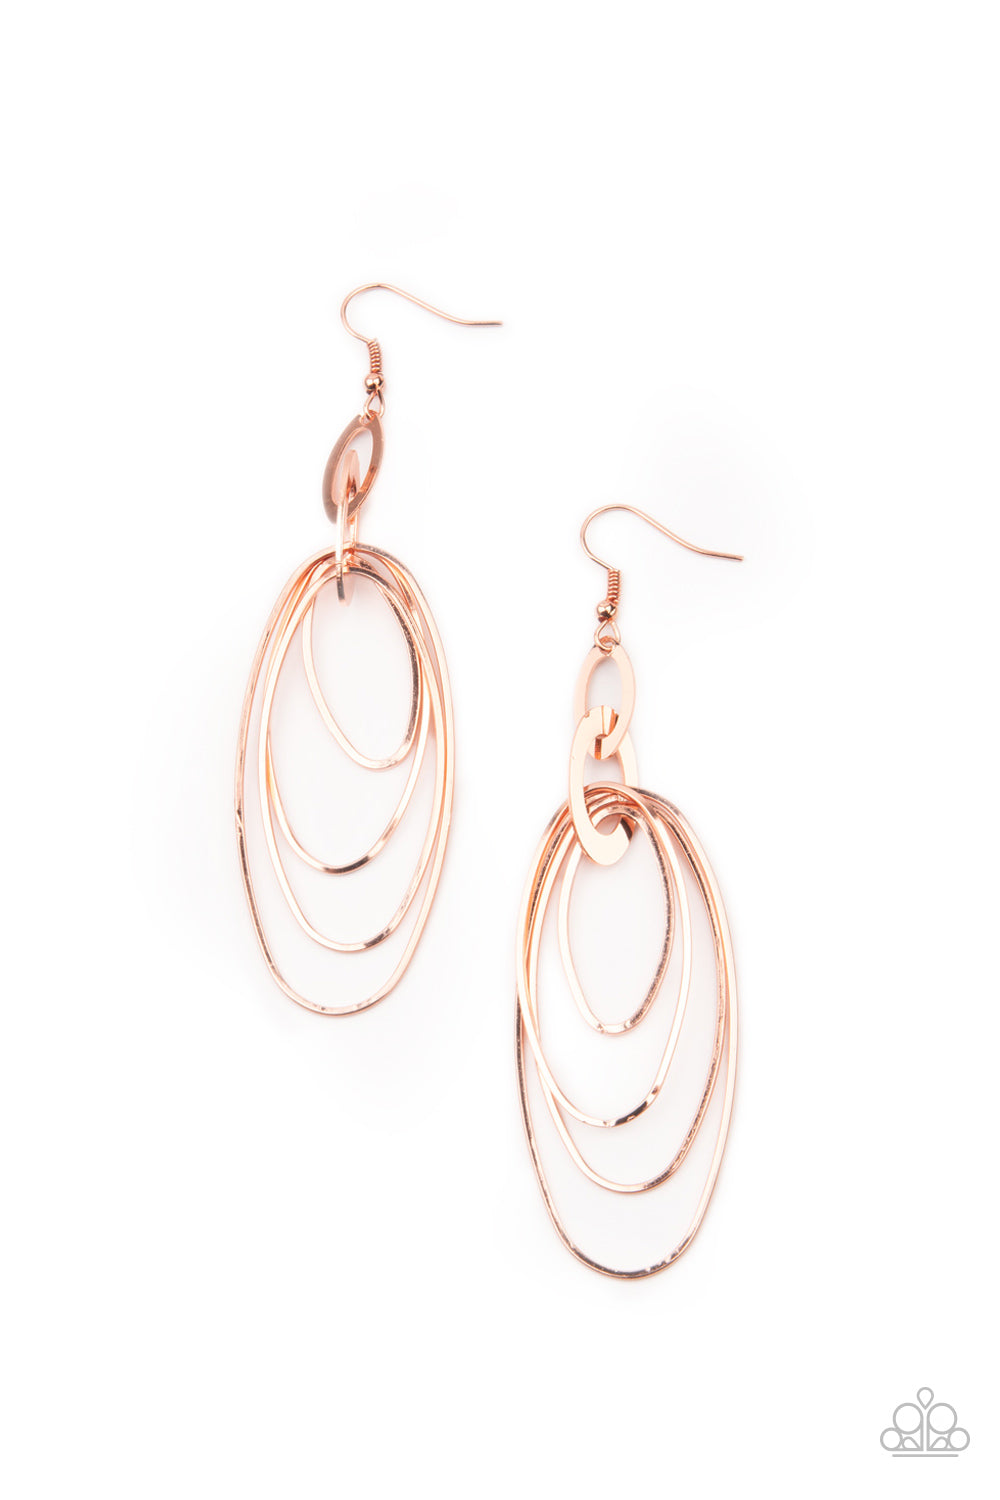 OVAL The Moon - Copper Earrings